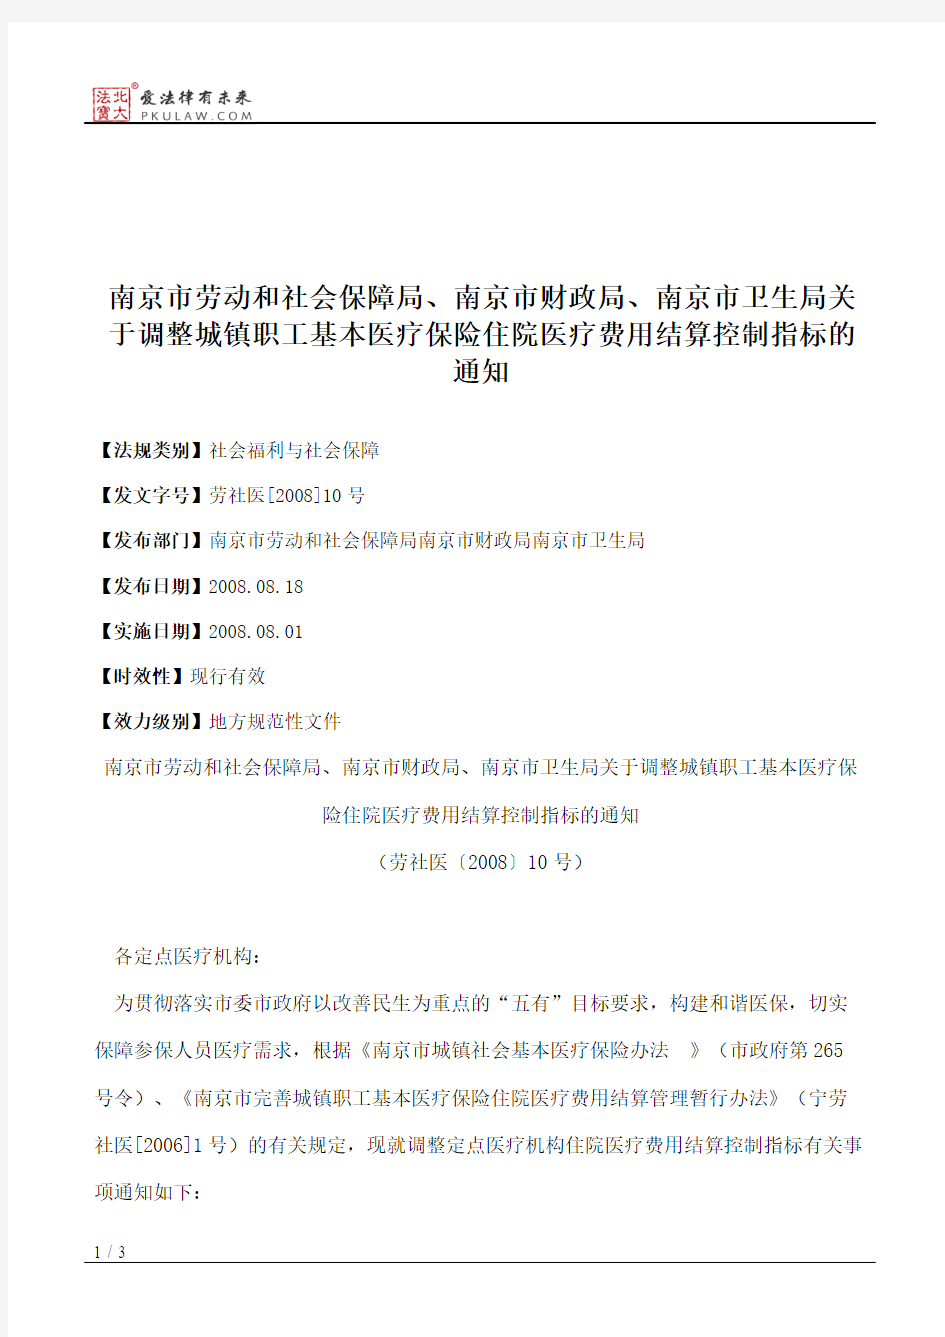 南京市劳动和社会保障局、南京市财政局、南京市卫生局关于调整城